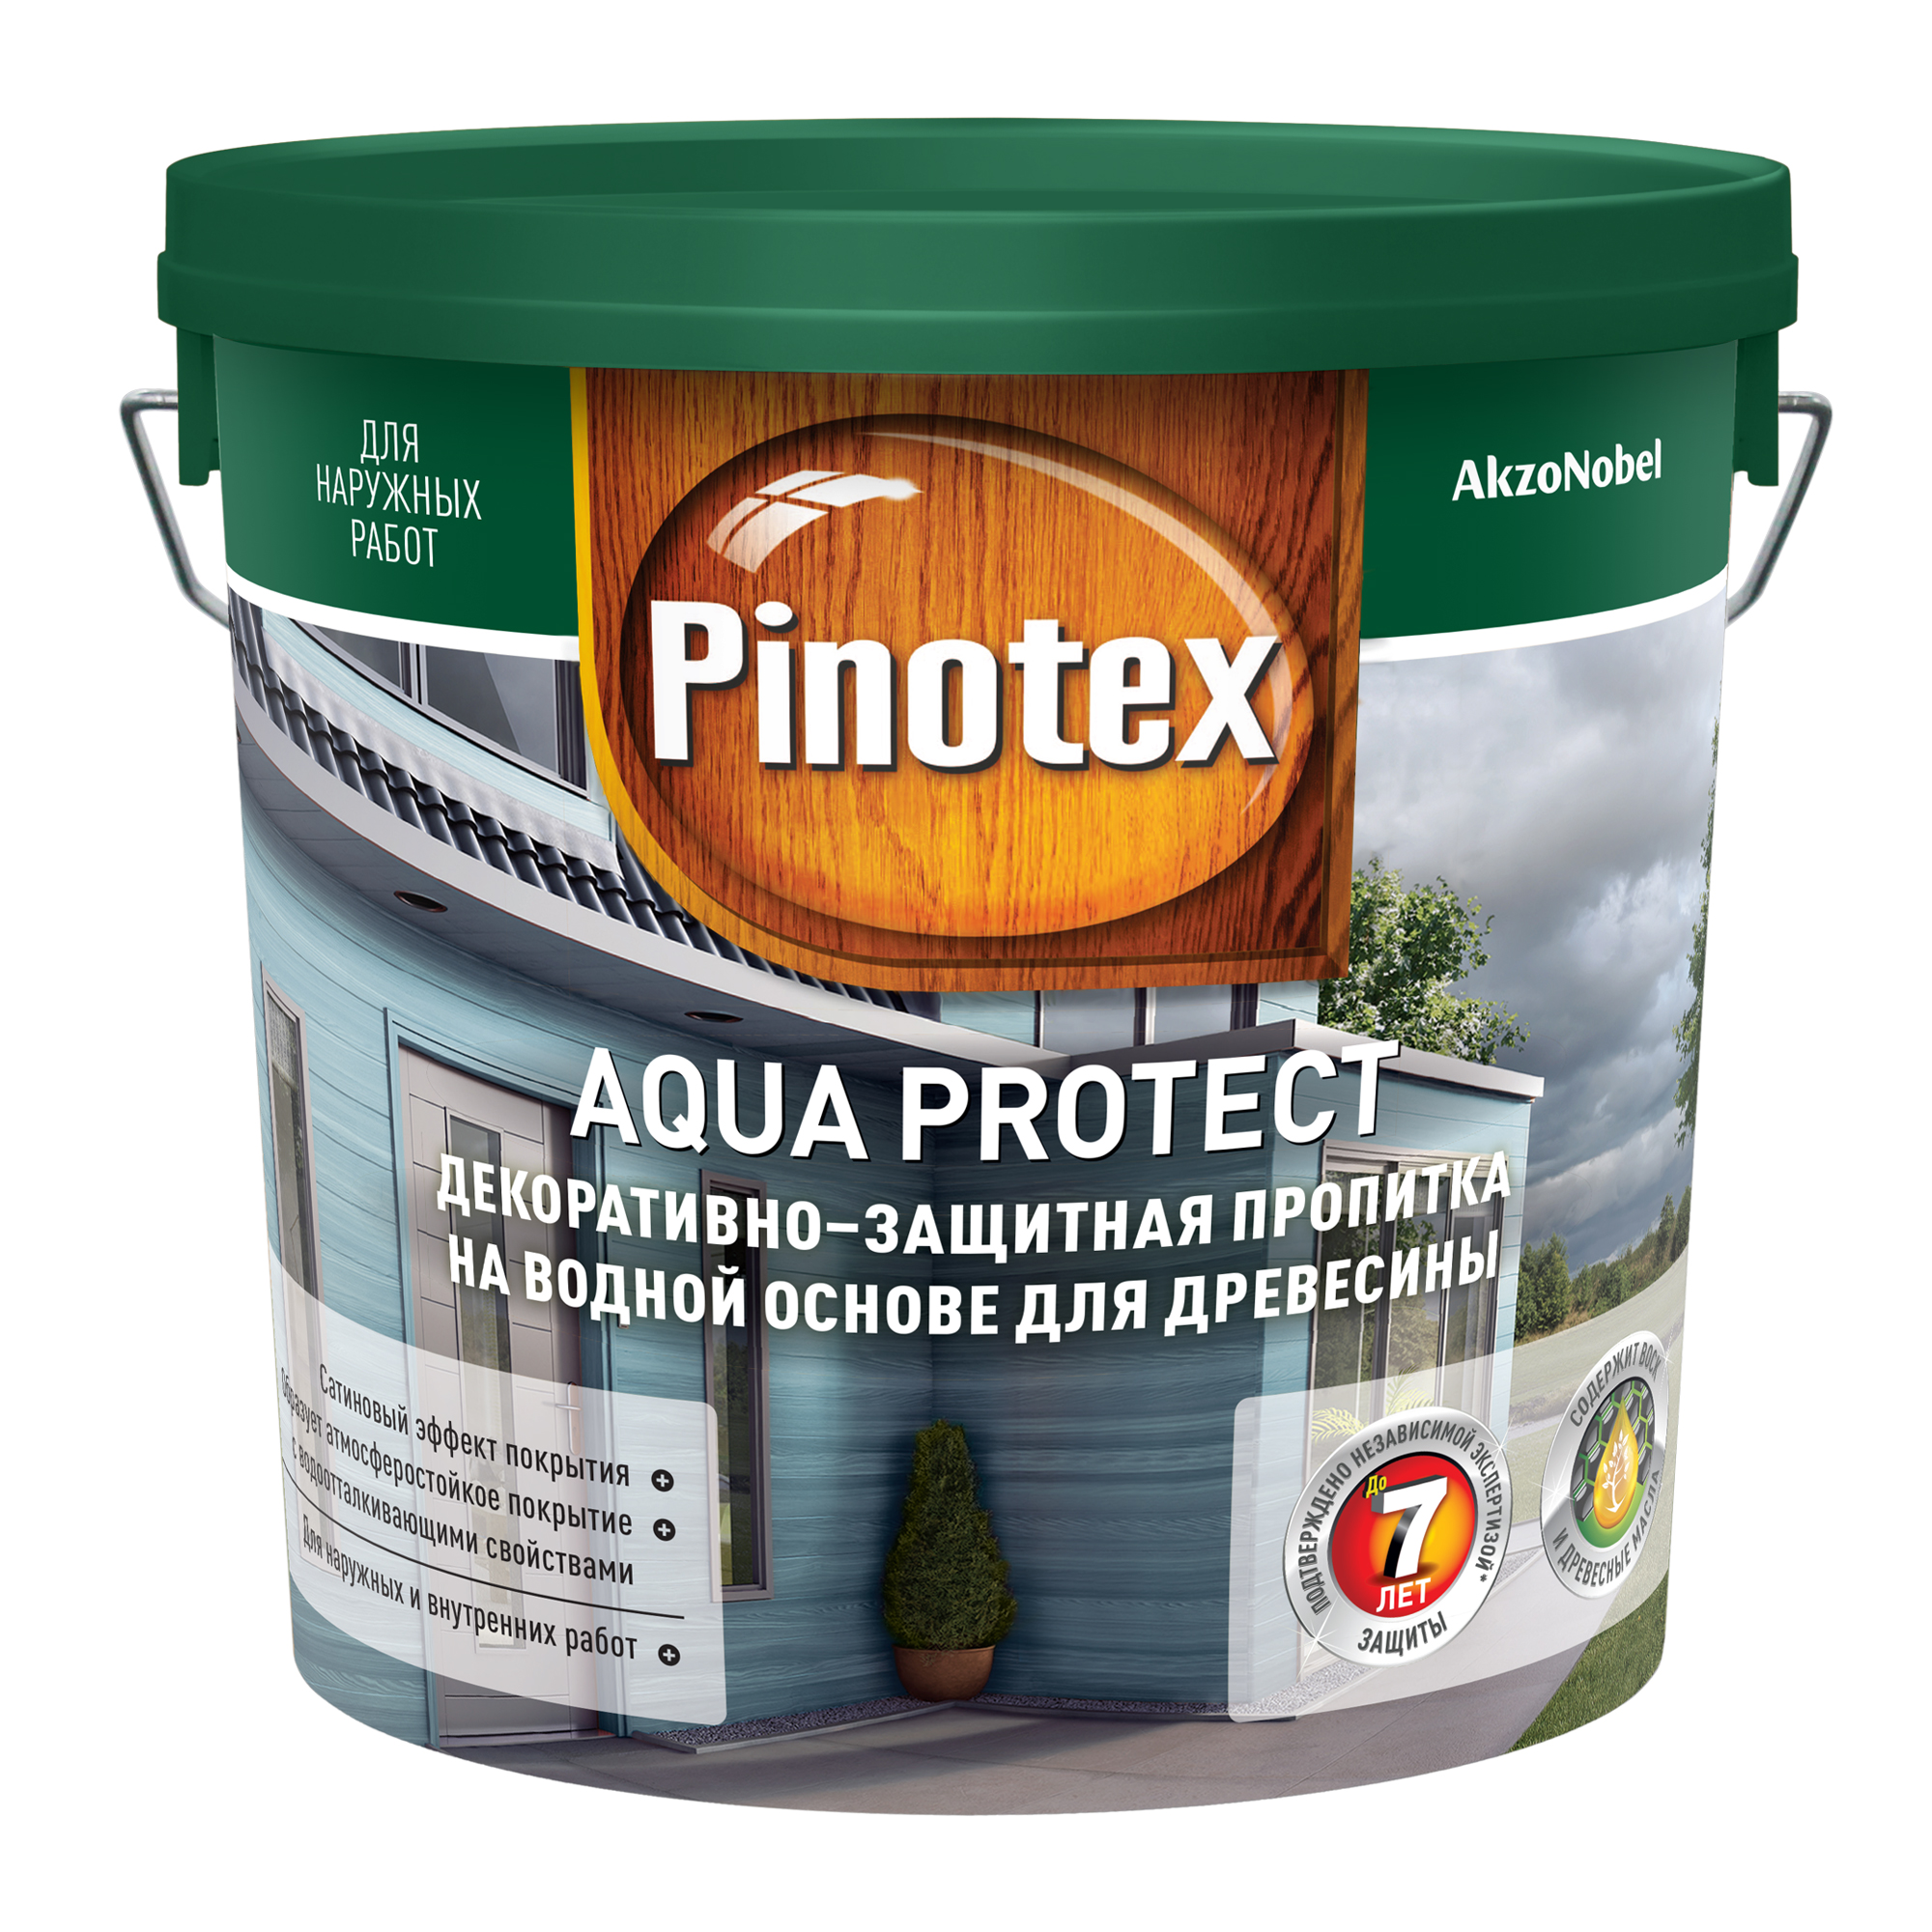 Пропитка антисептик pinotex. Аква Протект Пинотекс палитра. Пинотекс Аква Протект колеровка. Pinotex Aqua protect CLR (2,62л). Pinotex Aqua protect палитра.